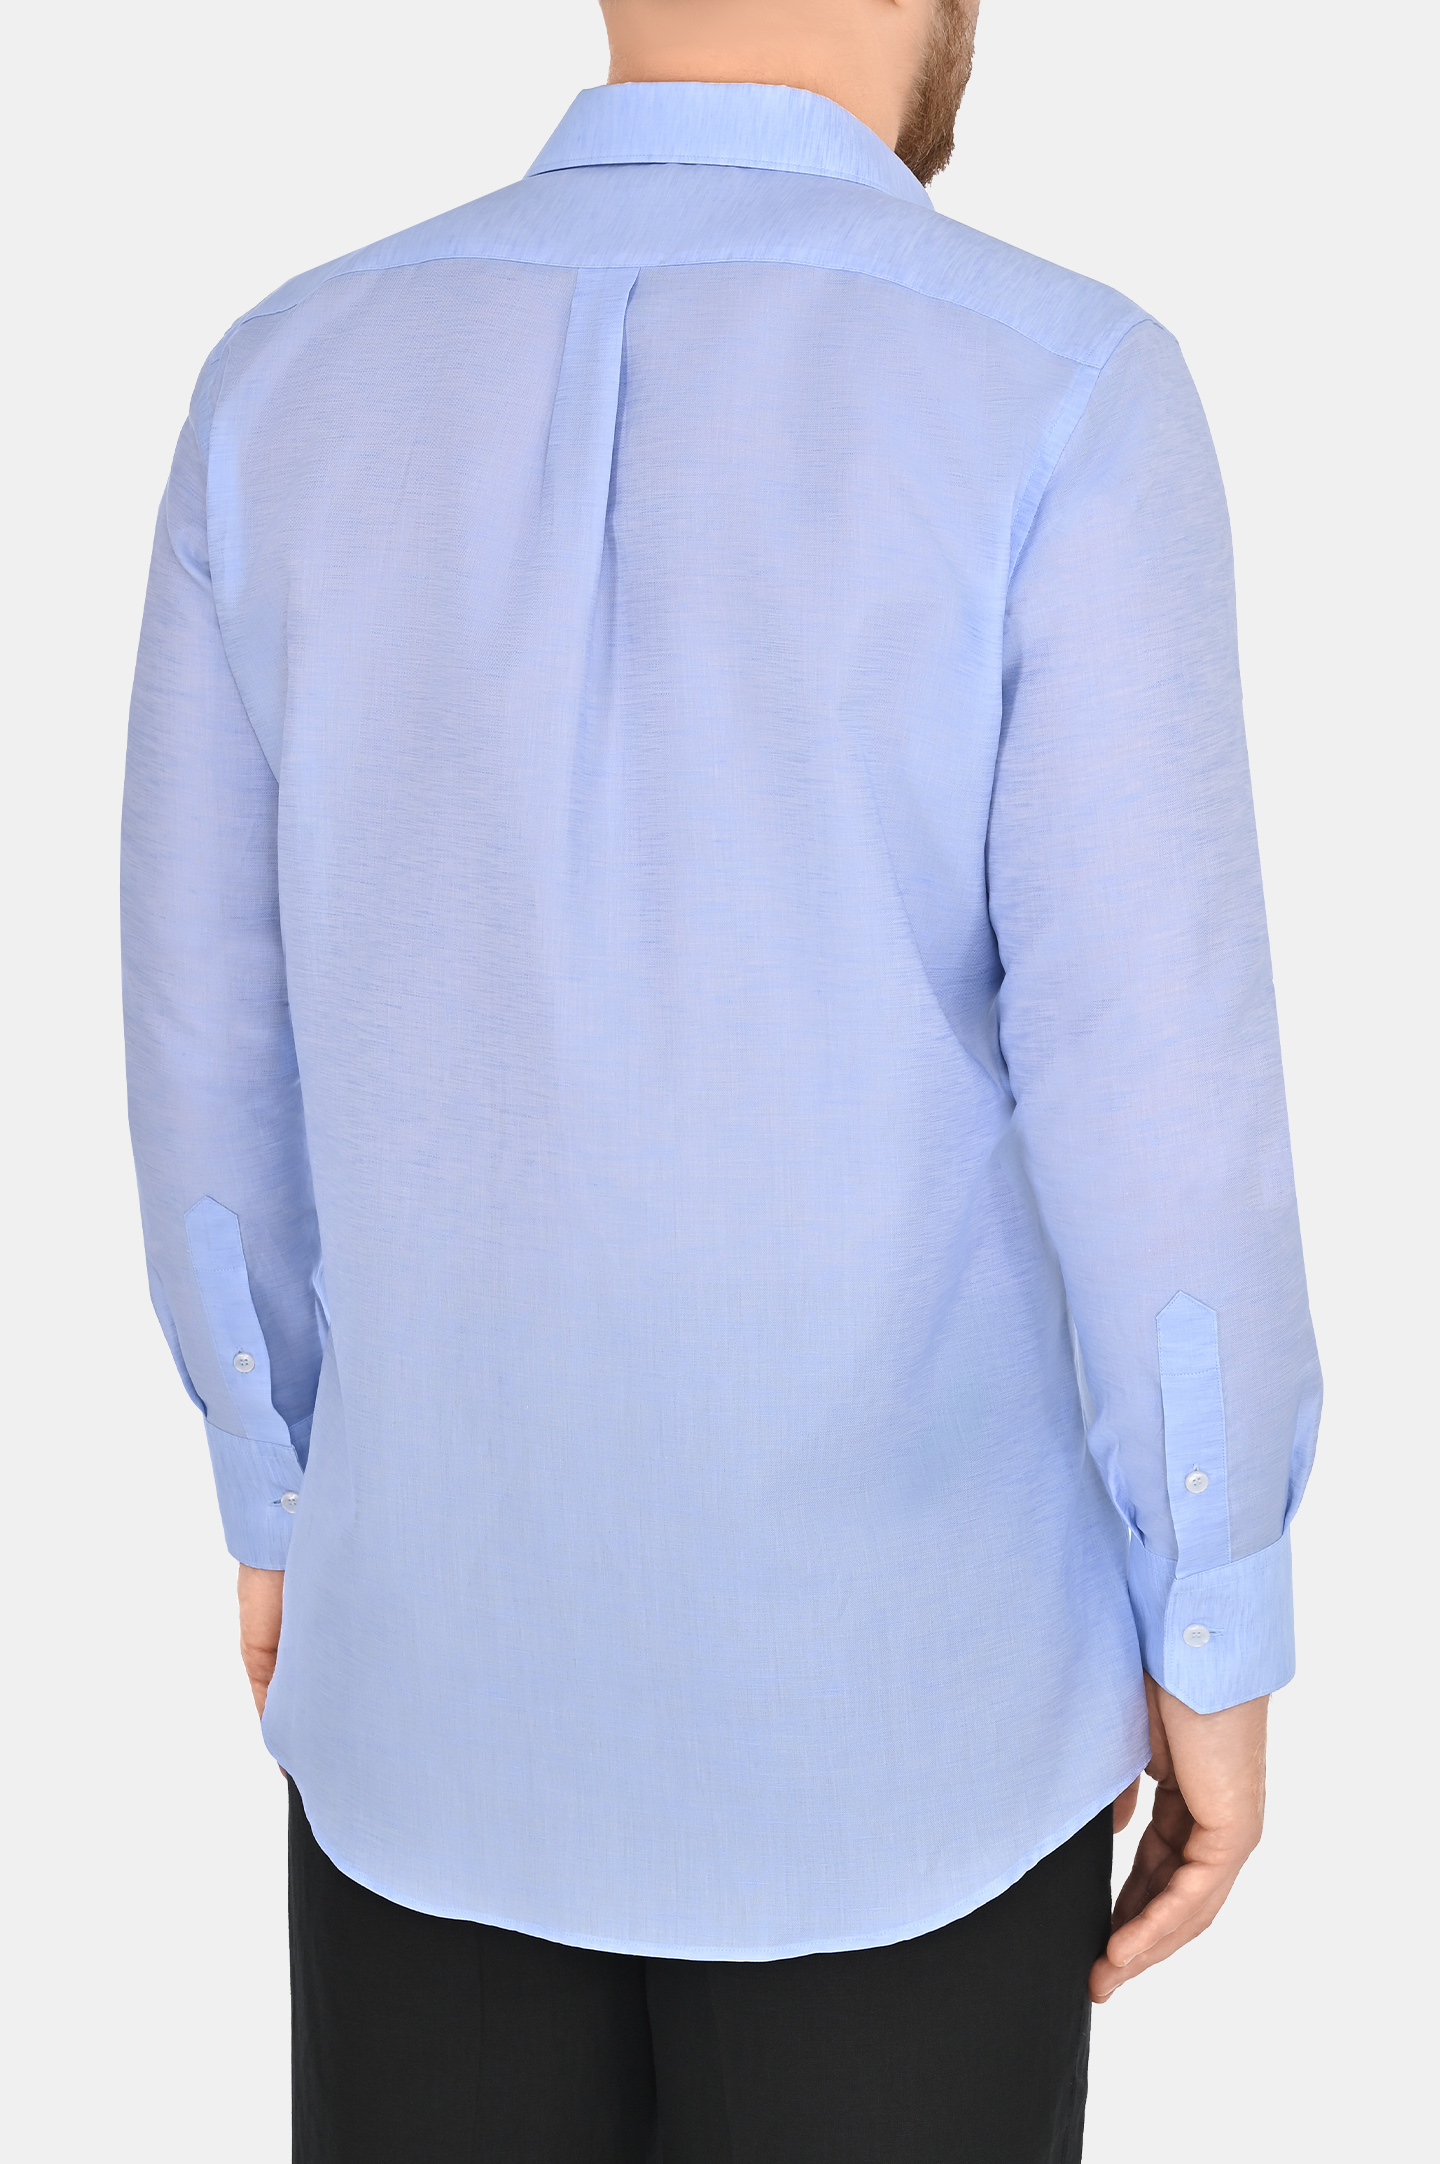 Рубашка из хлопка и льна DOLCE & GABBANA G5LH9Z FUTB6, цвет: Голубой, Мужской